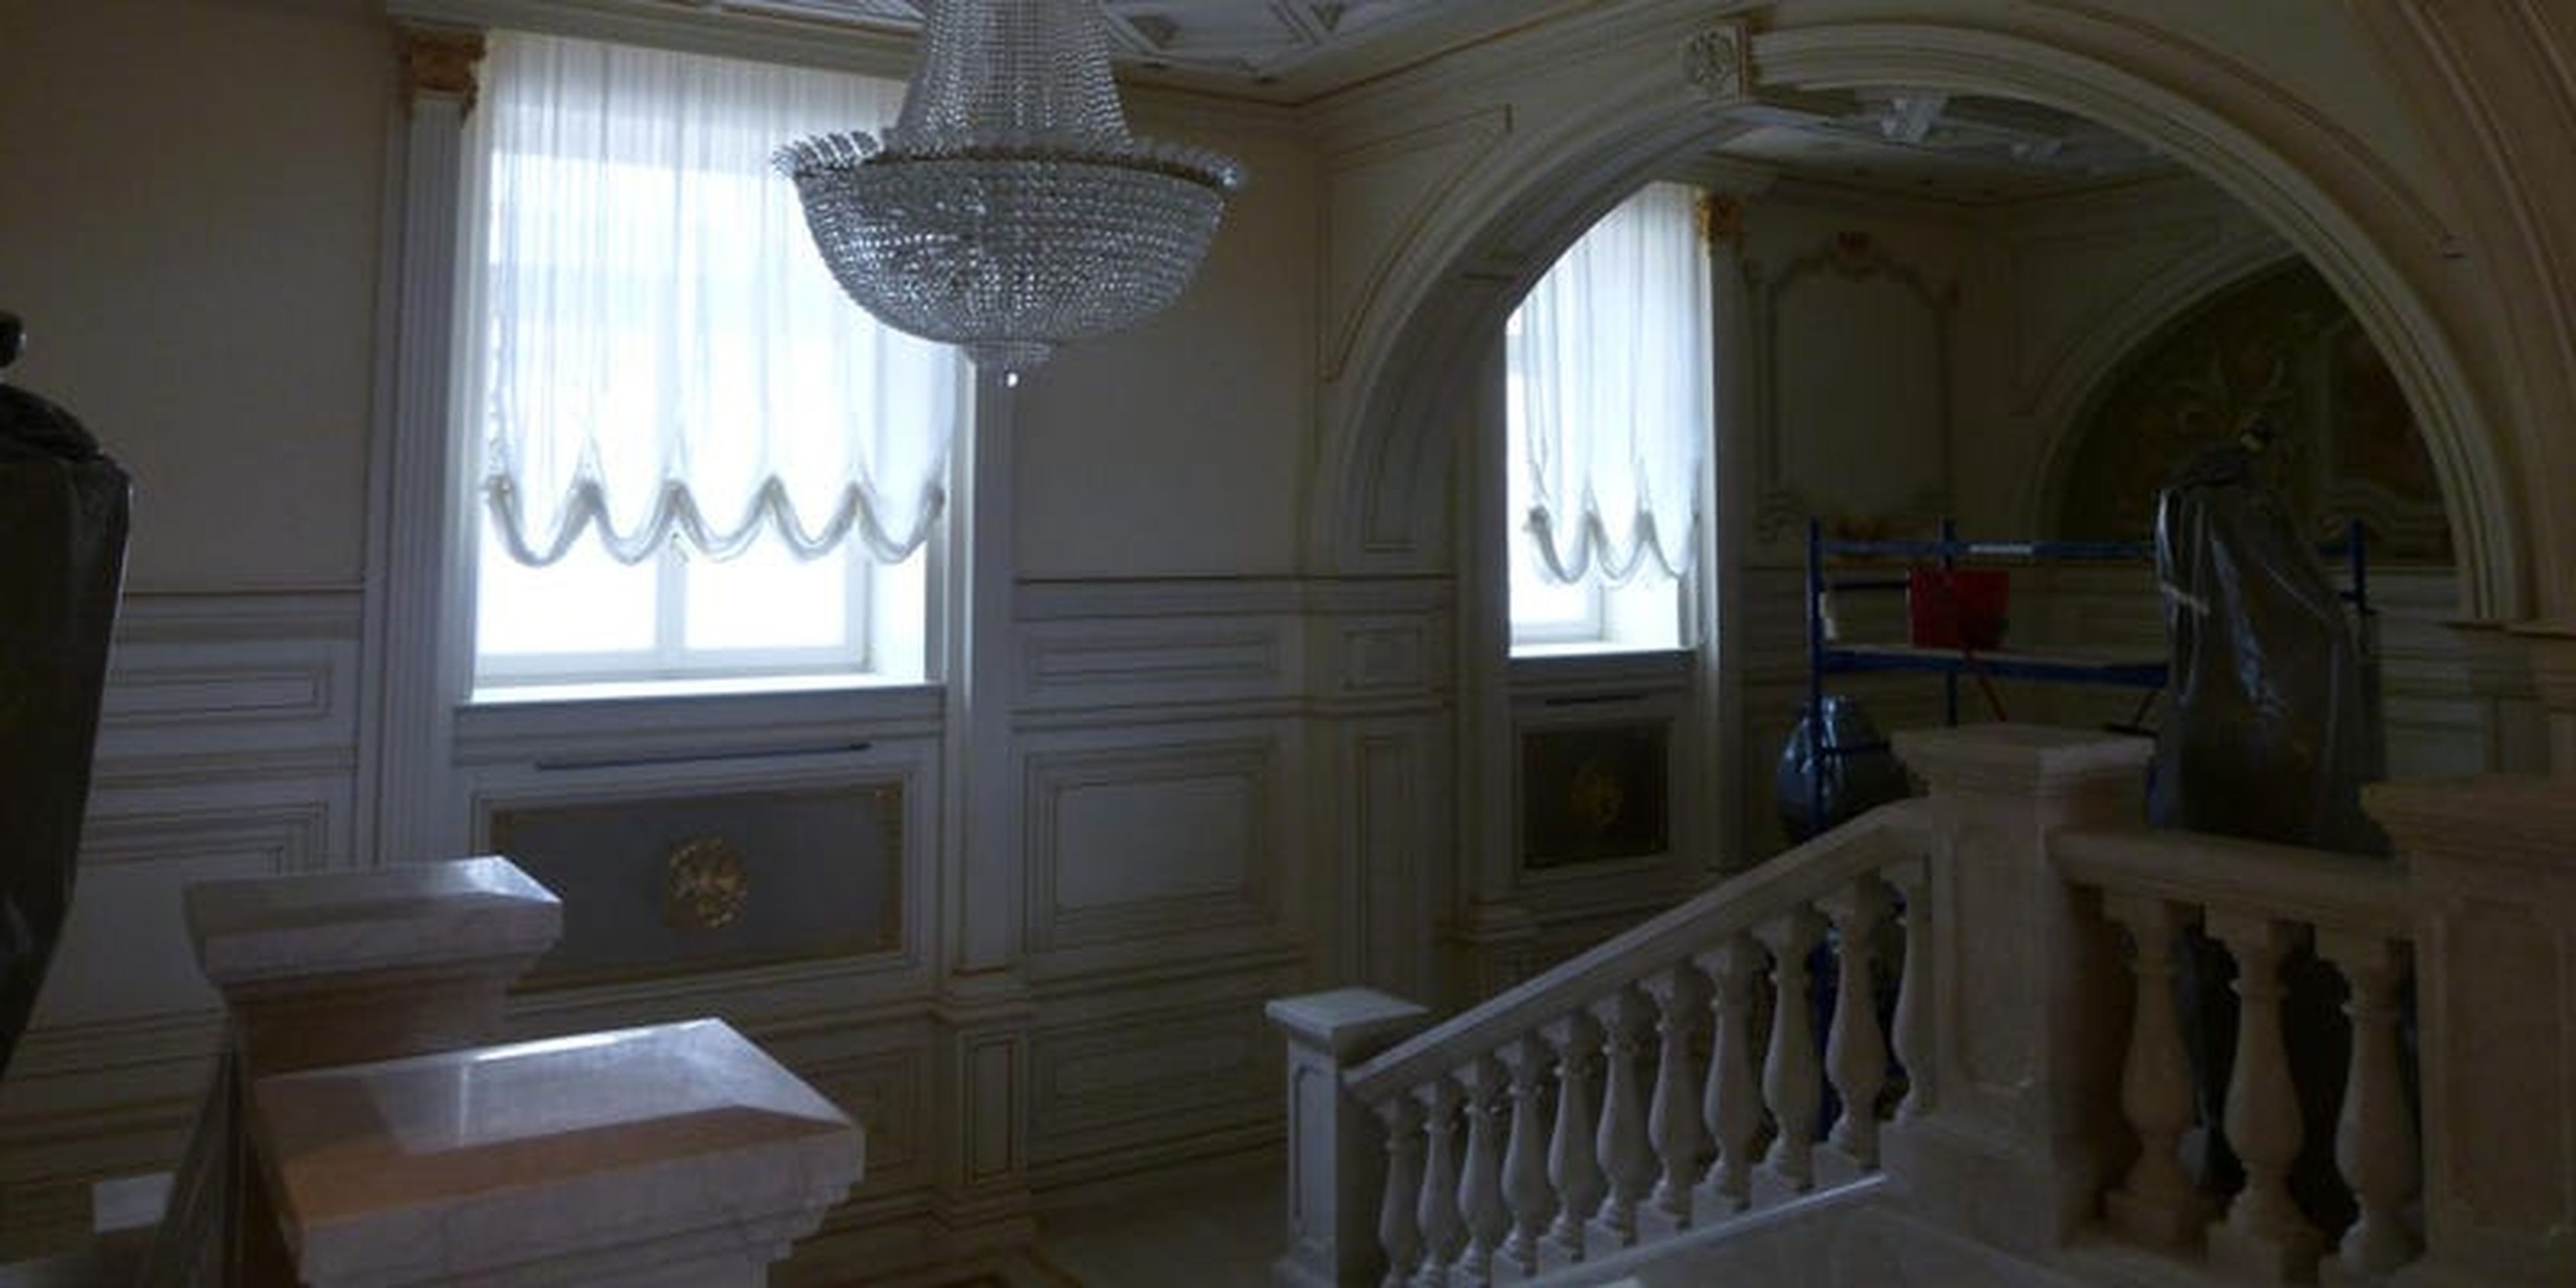 Pasillos interiores del palacio.